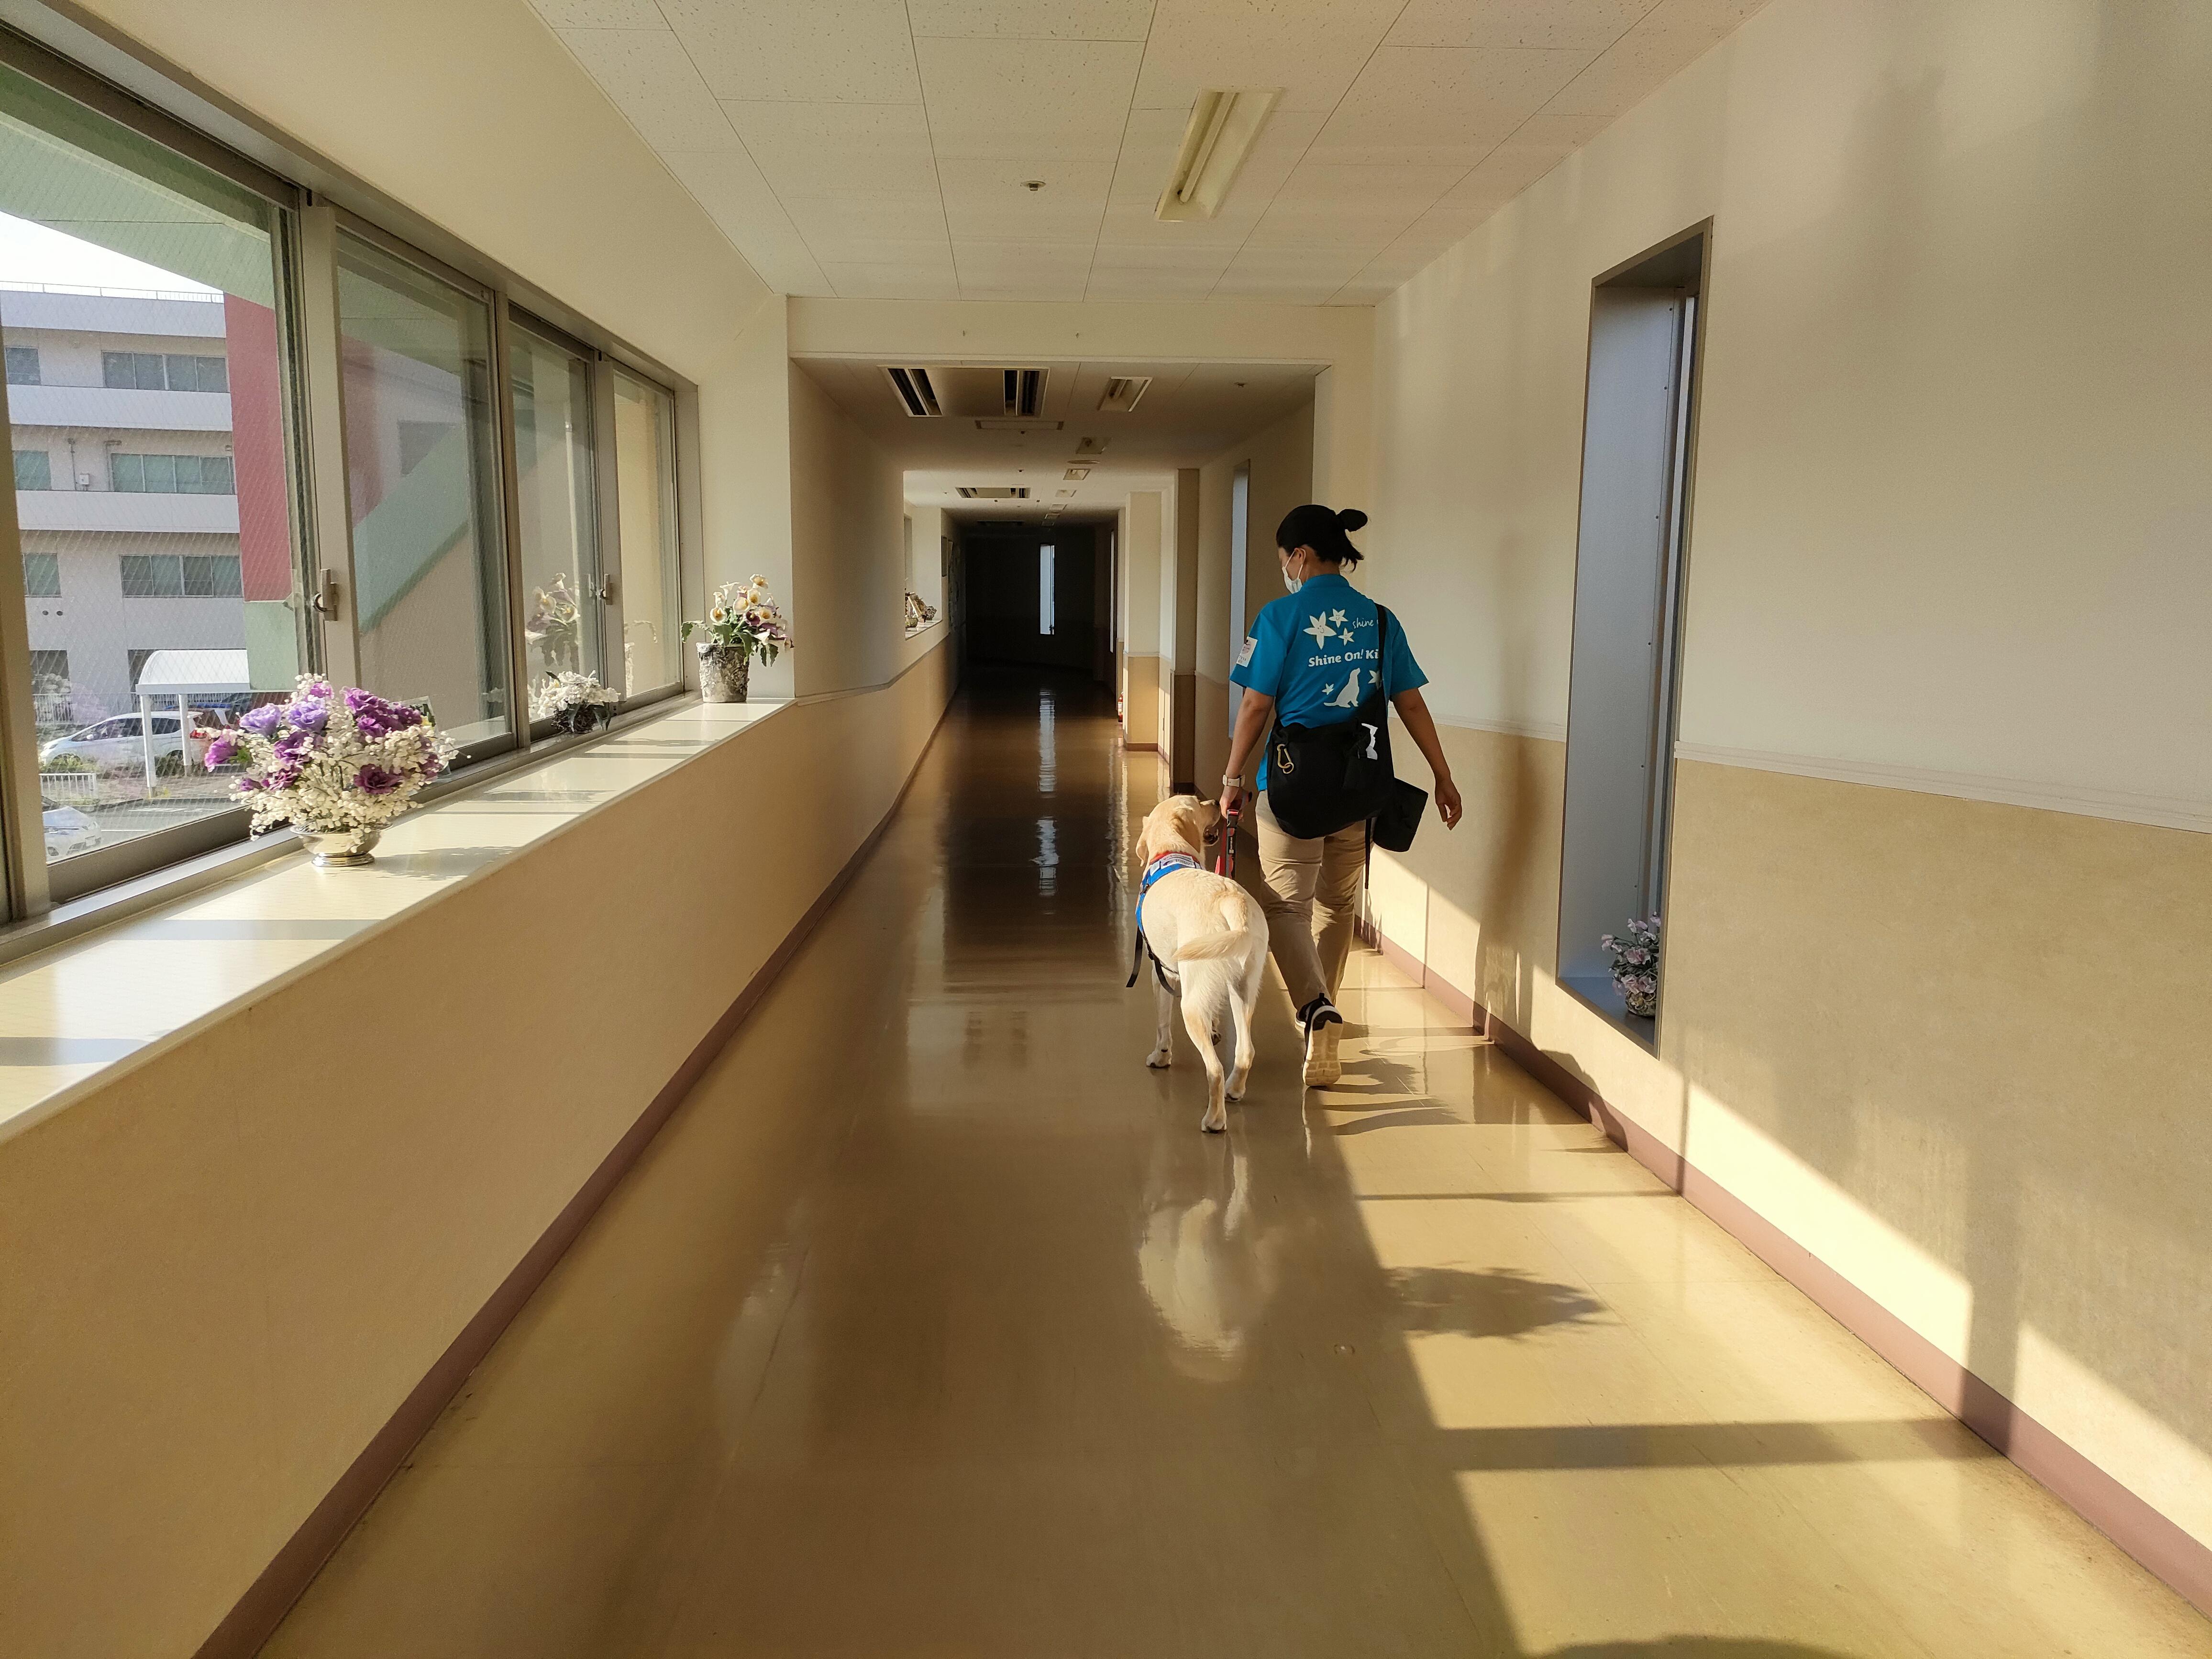 ドッグトレーナー平沢が神奈川県立こども医療センター廊下で候補犬ニックと練習している様子